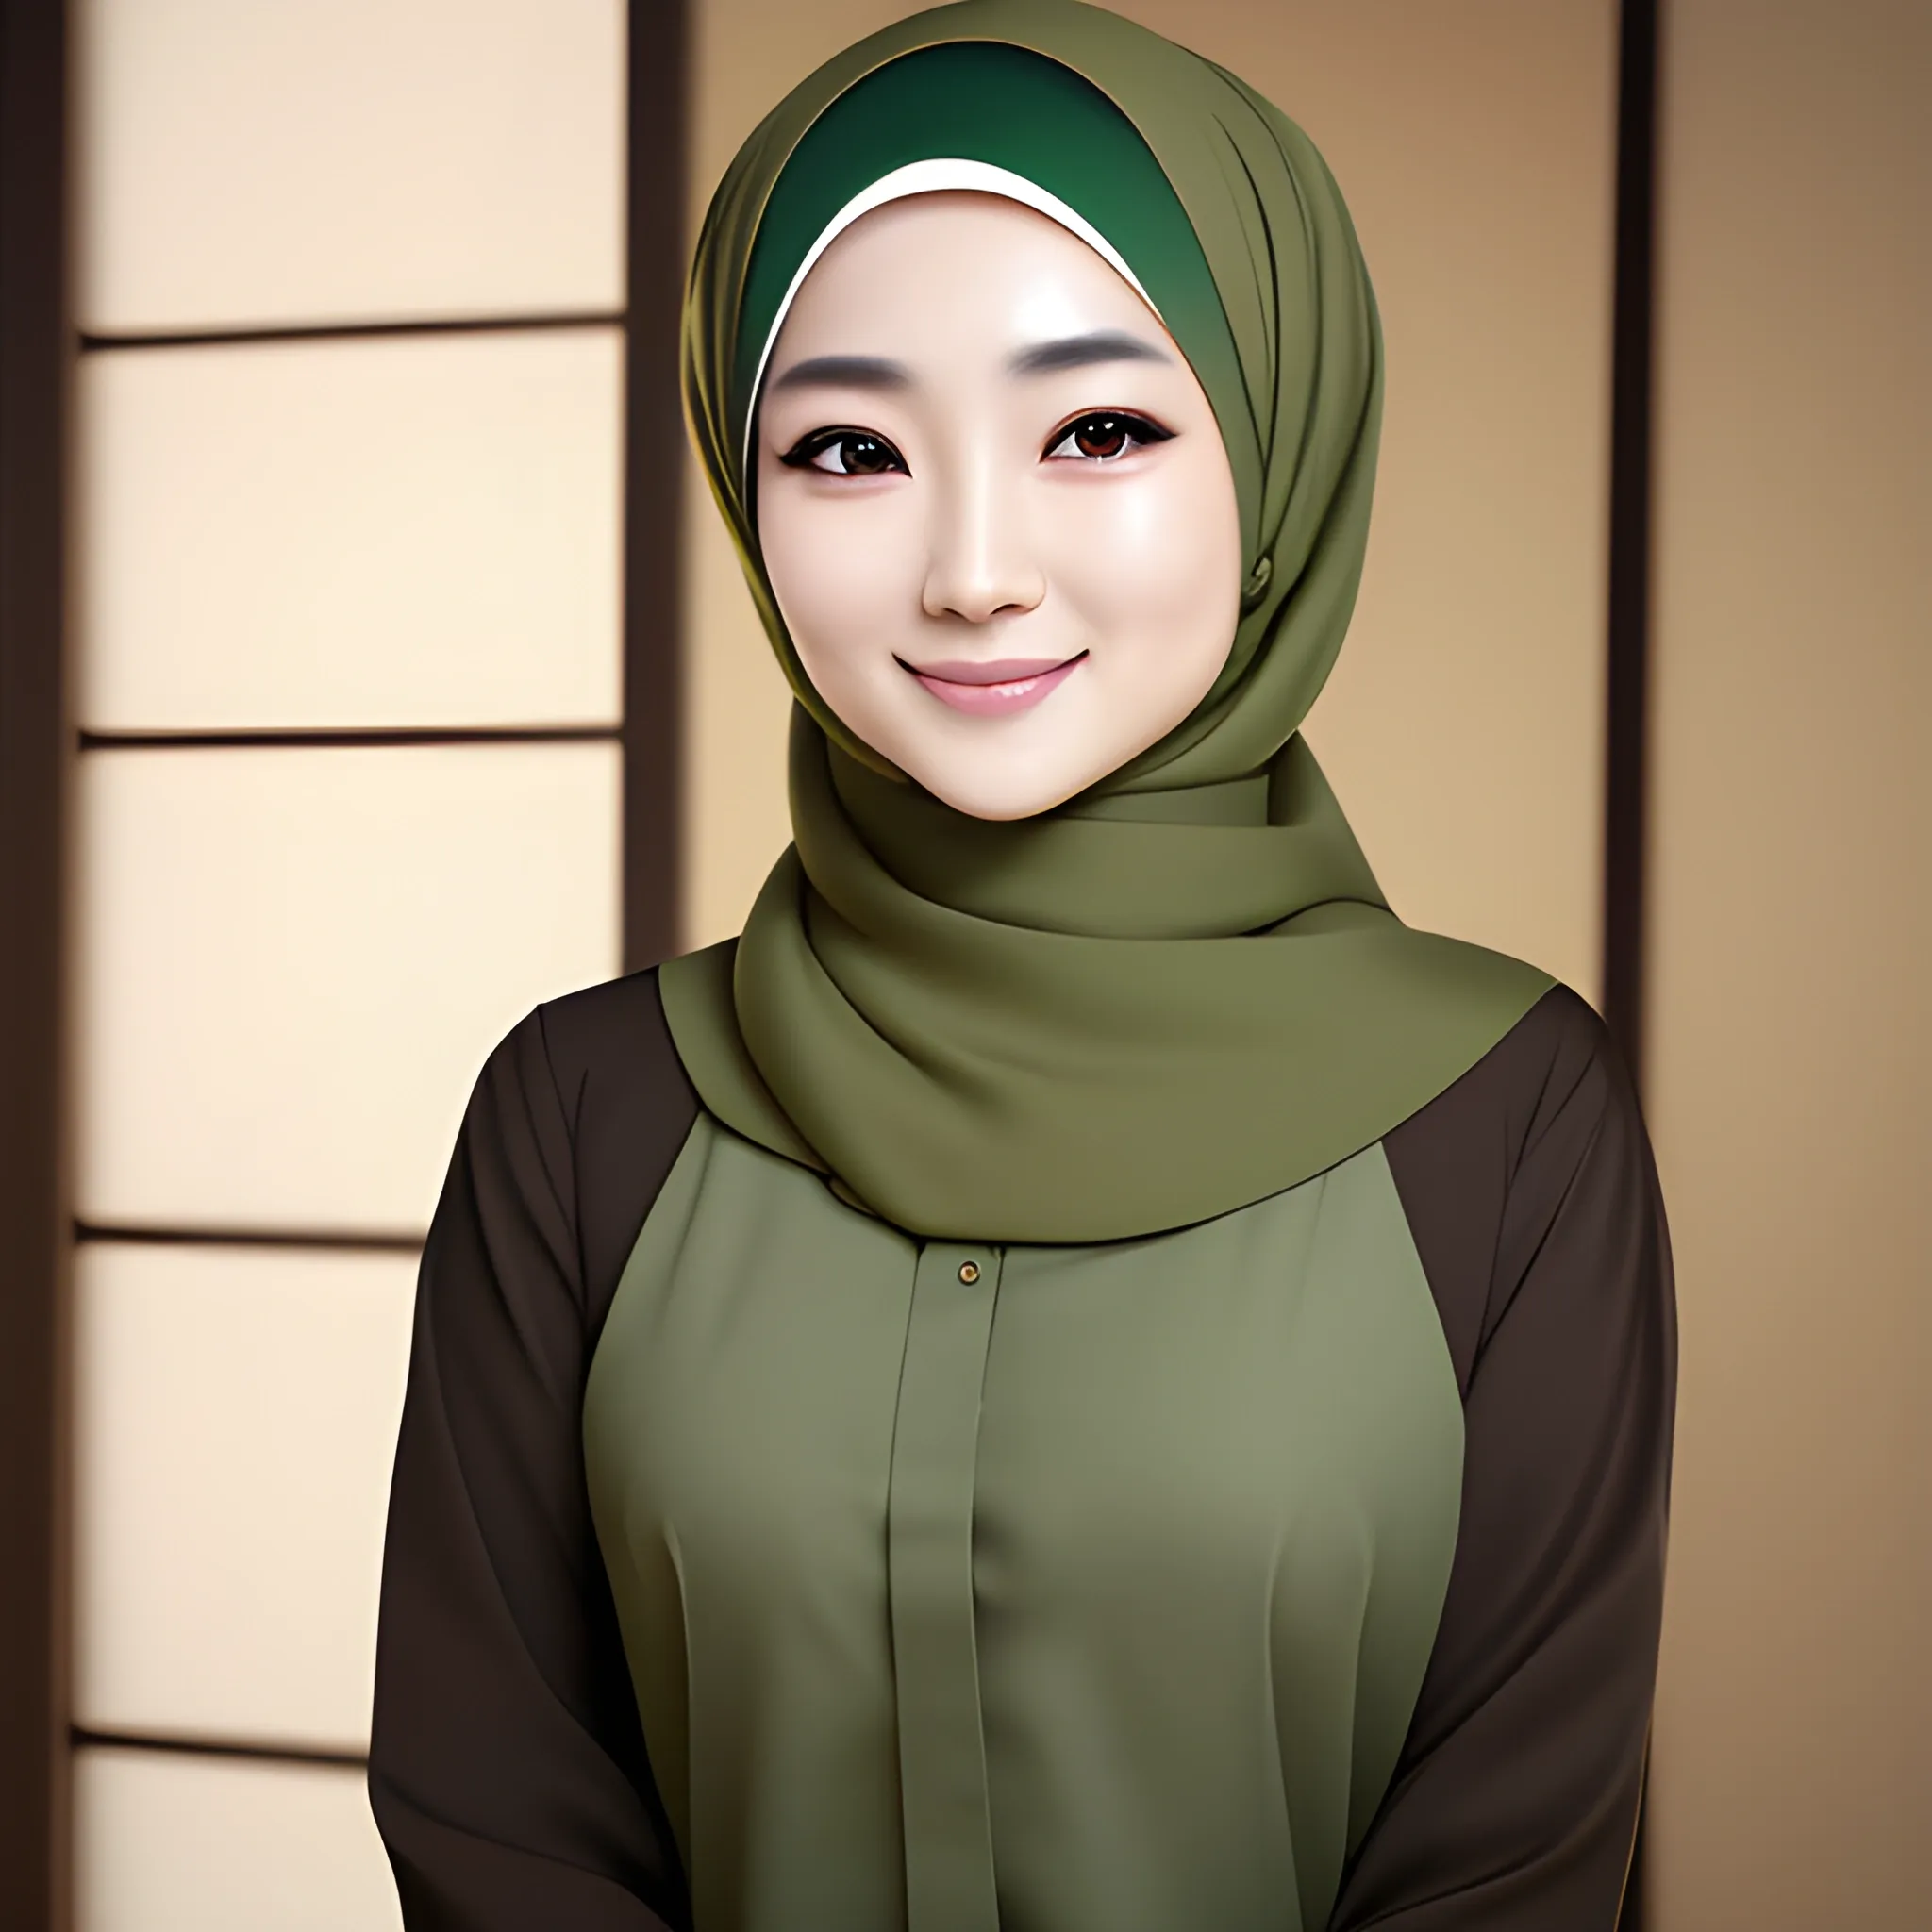 japanese women artist, elegant, happy, face detail, sharp nose, black eyes, wearing a brown hijab, green shirt, formal, her eyes looking at camera, 4k